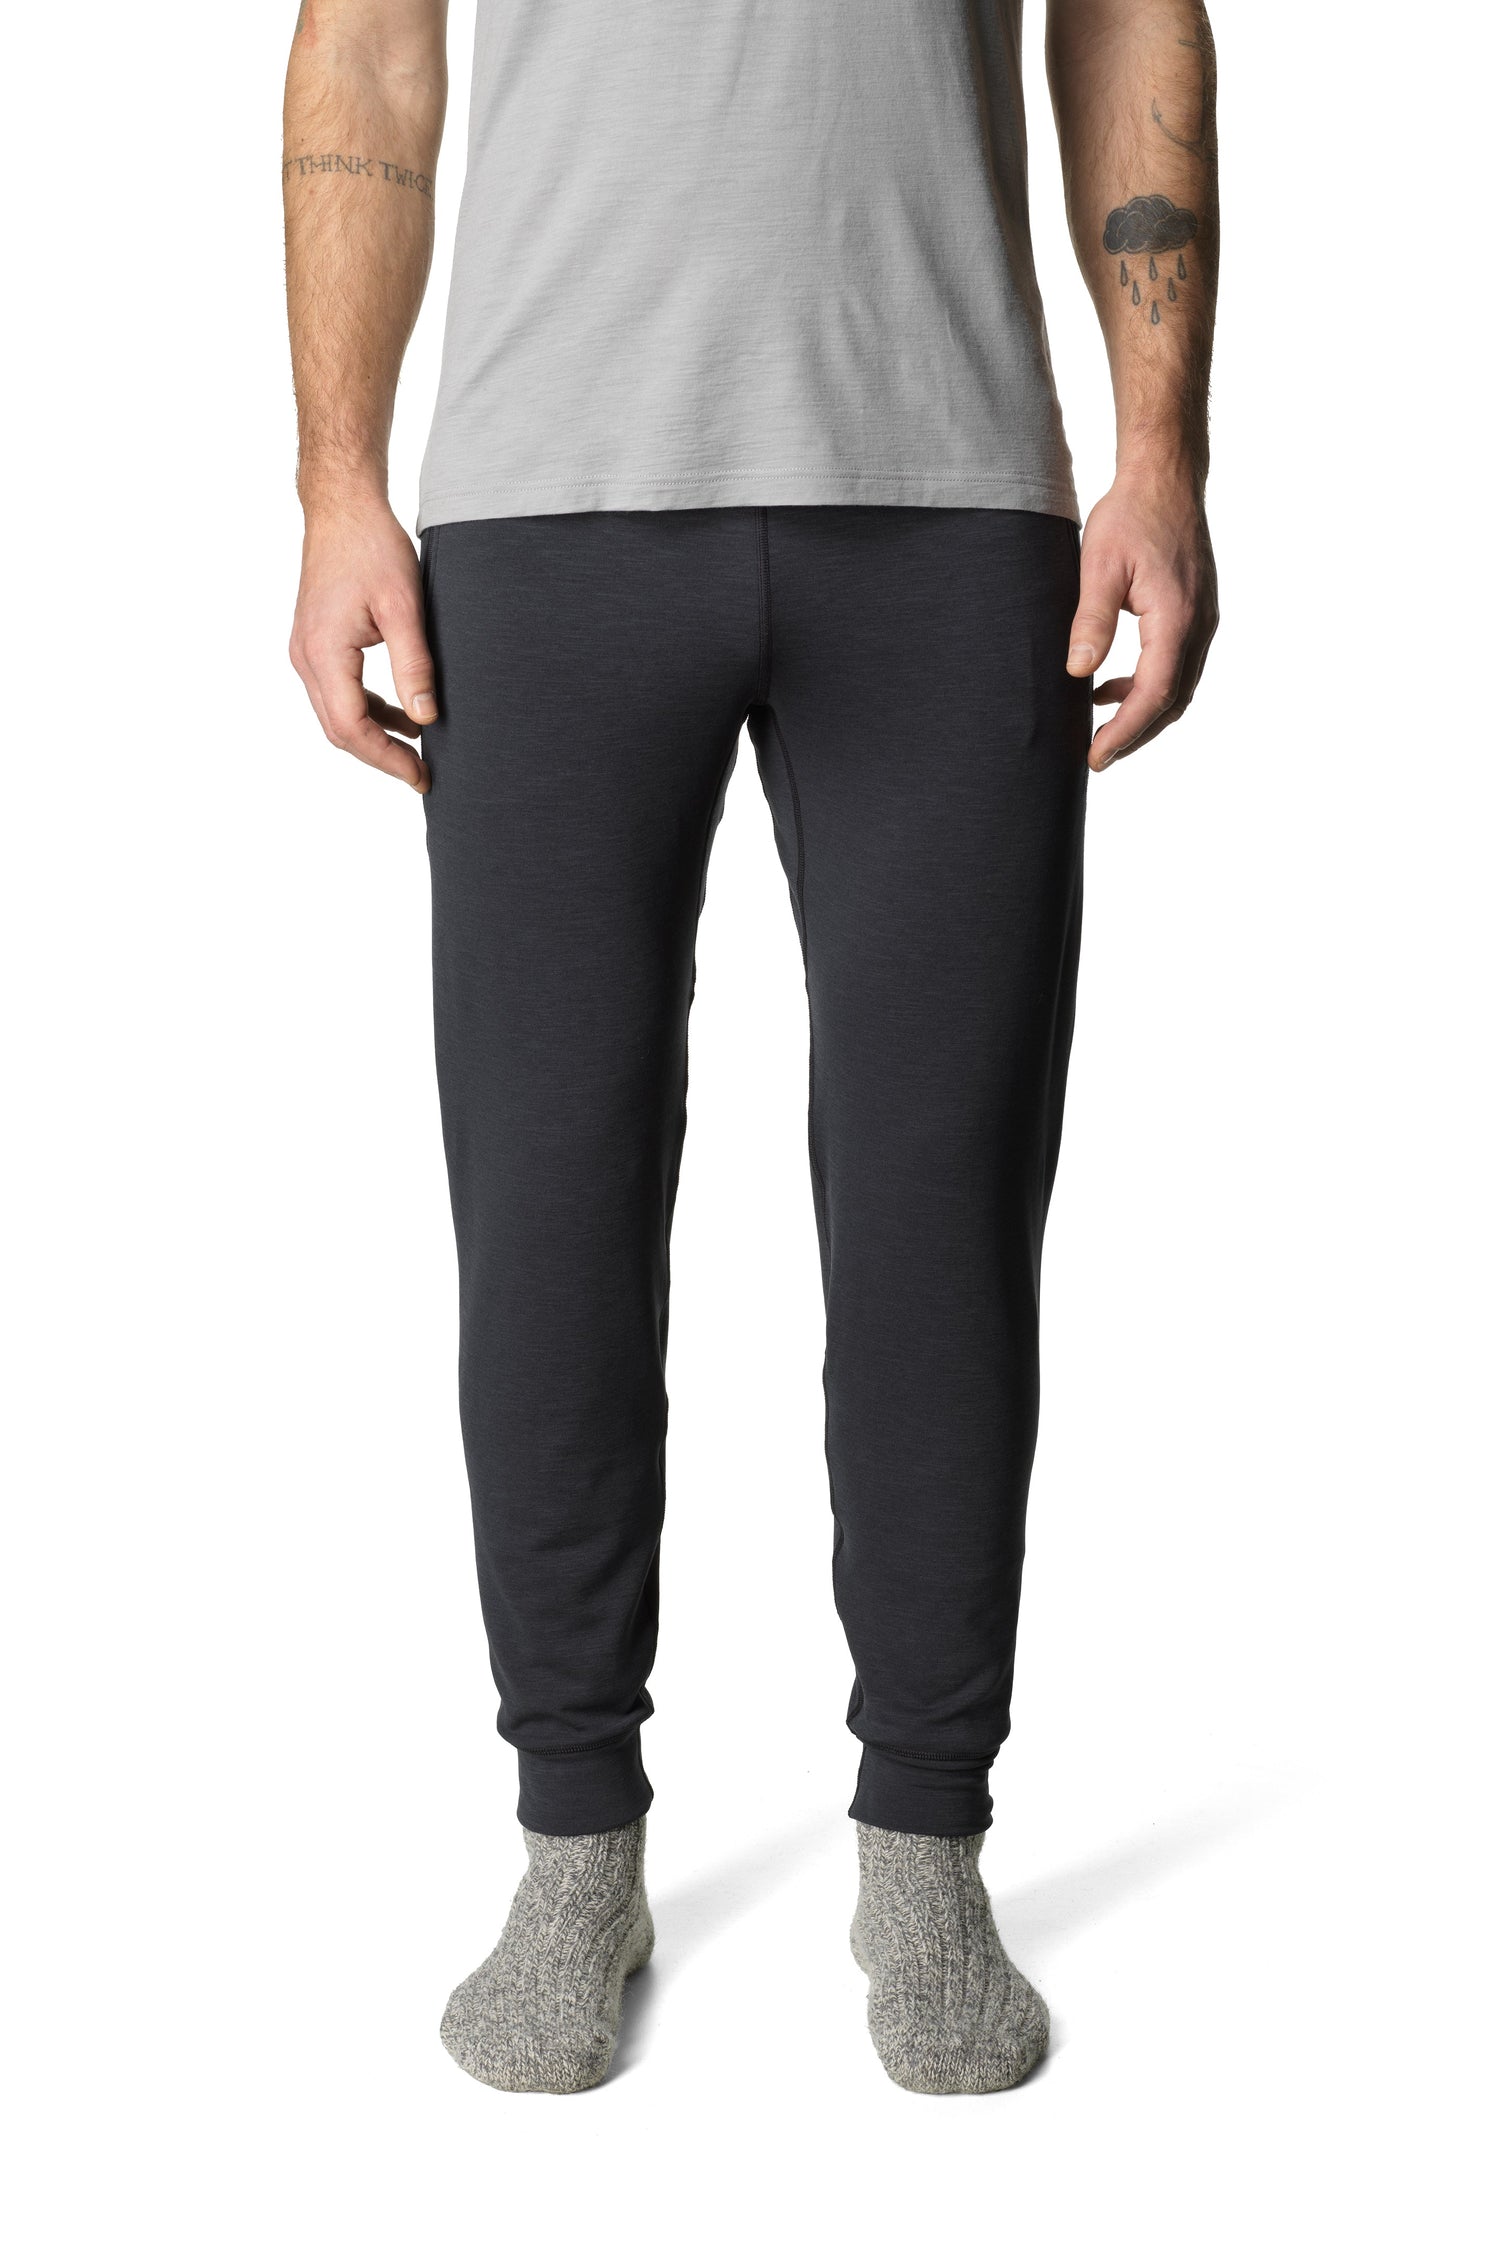 Houdini - M's Outright Pants - Bluesign® certified fleece - Weekendbee - sustainable sportswear